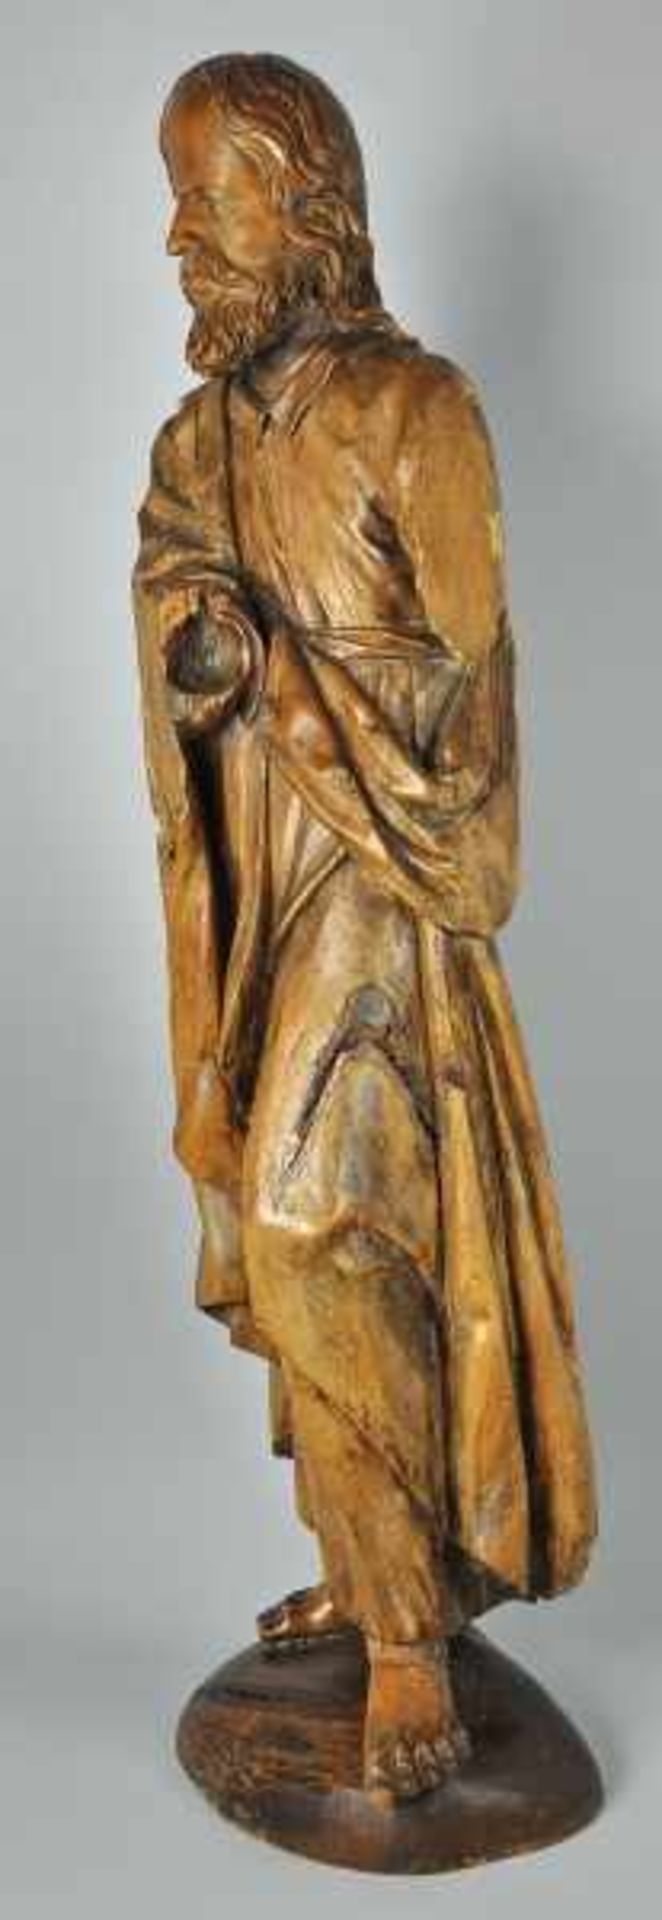 CHRISTUS 3/4 rund geschnitzte Holzfigur, Rückseite gehöhlt, 17./18.Jh, auf späterer ovaler Basis, - Bild 4 aus 7